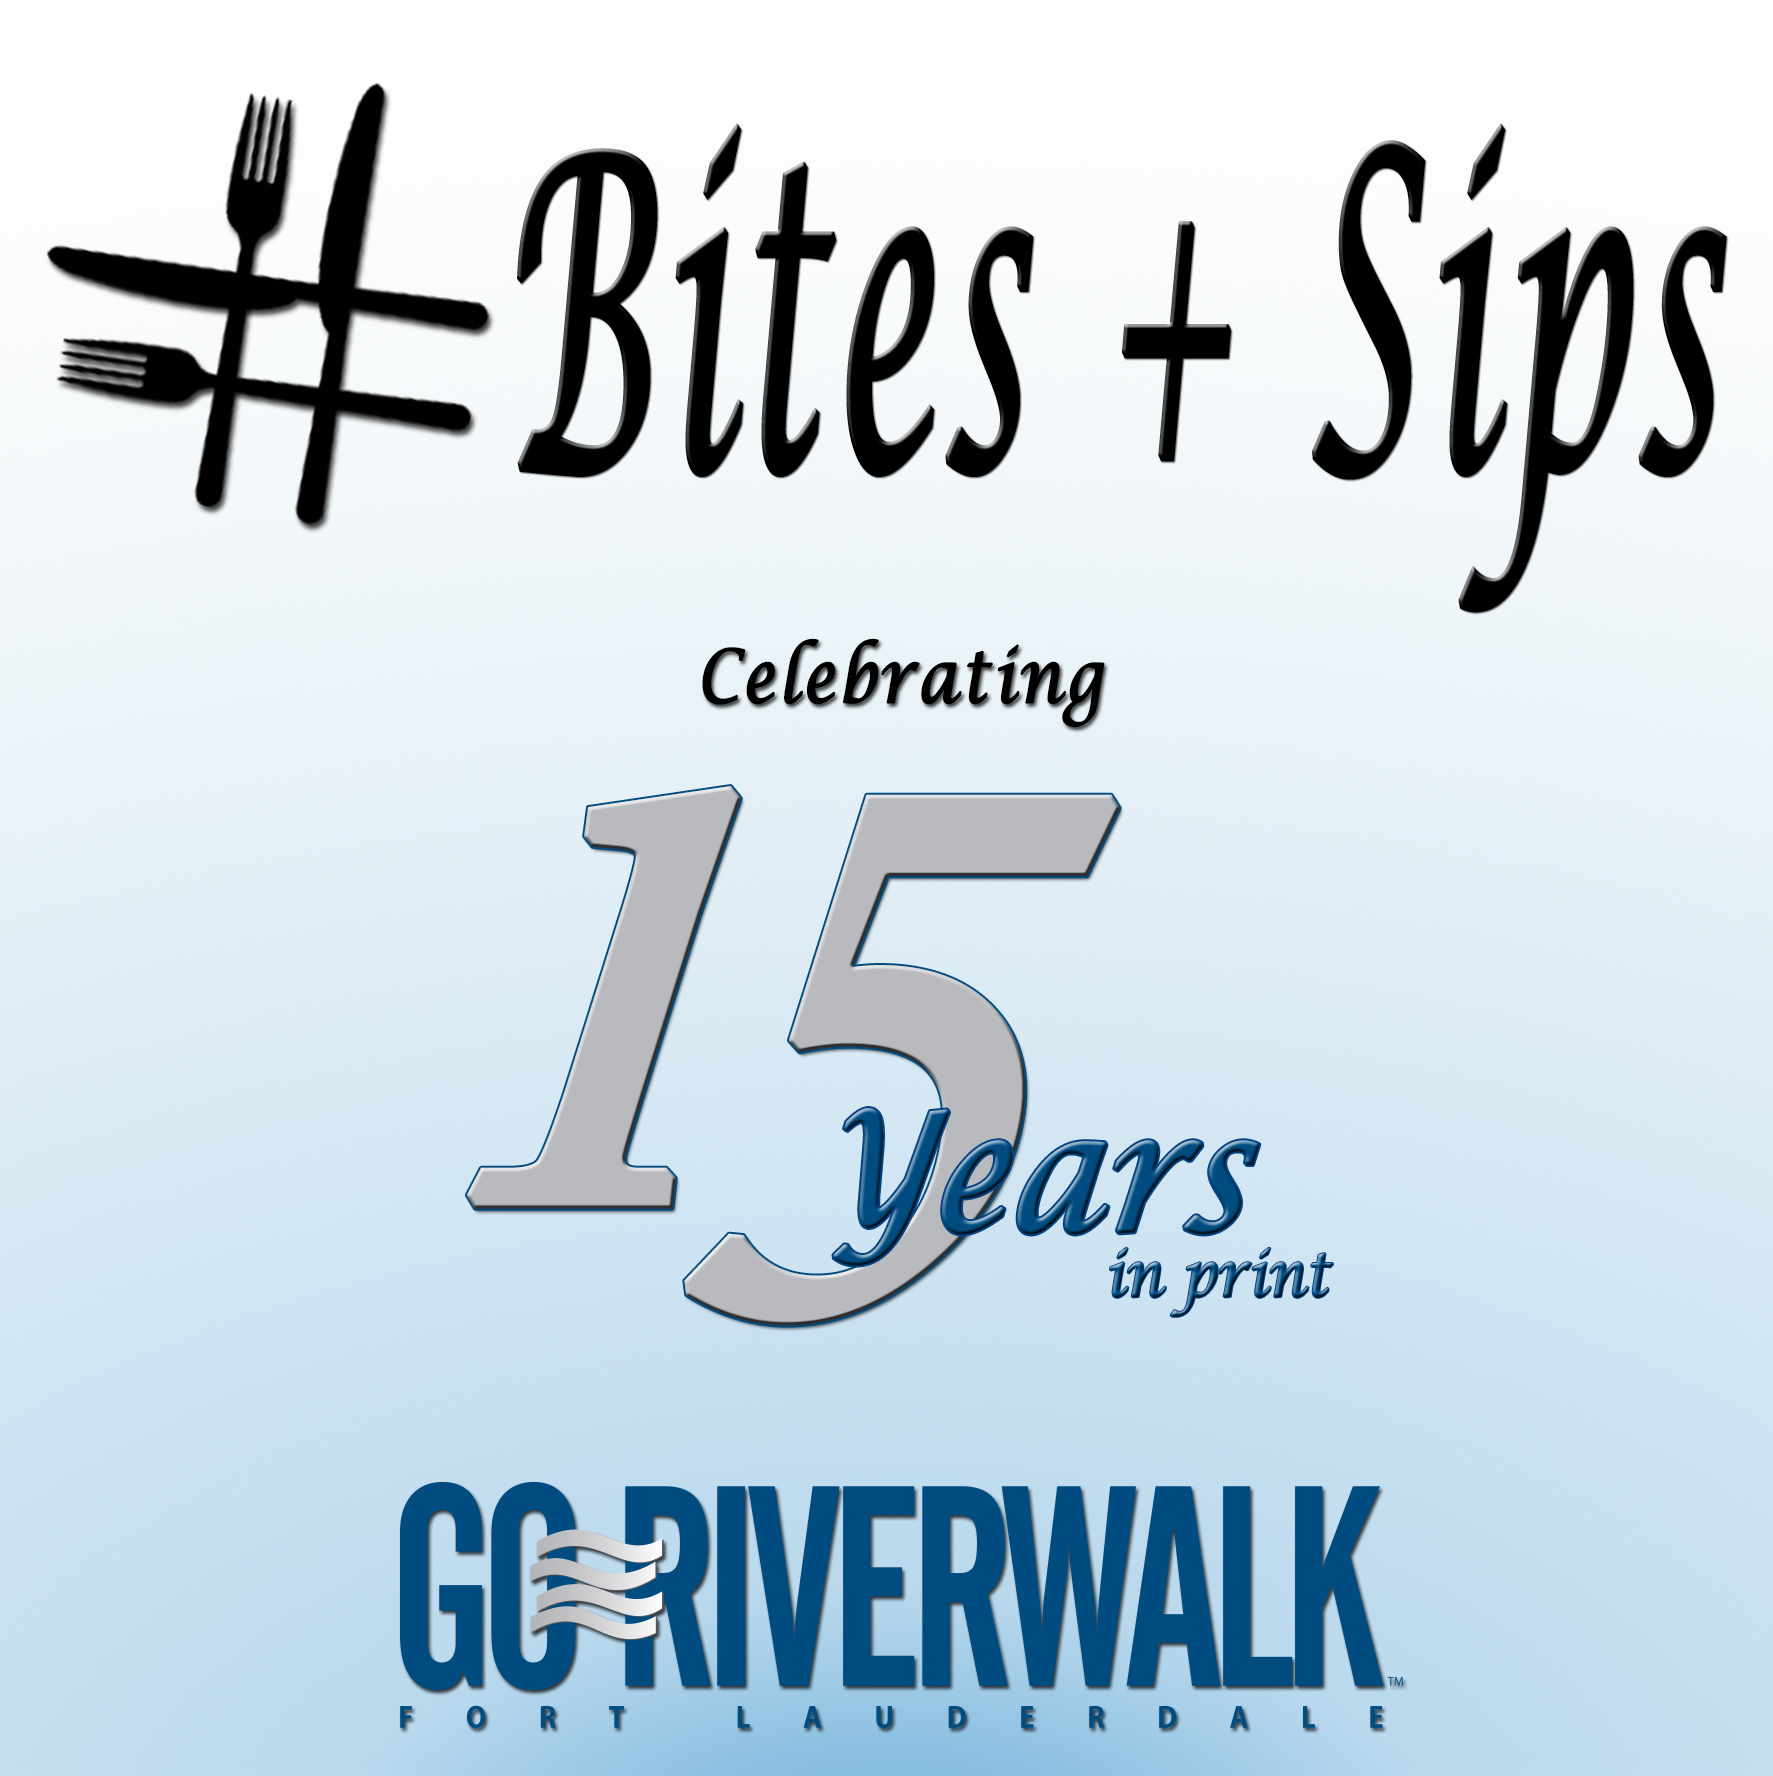 #Bites + Sips celebrating Go Riverwalk Magazine's 15 years in print